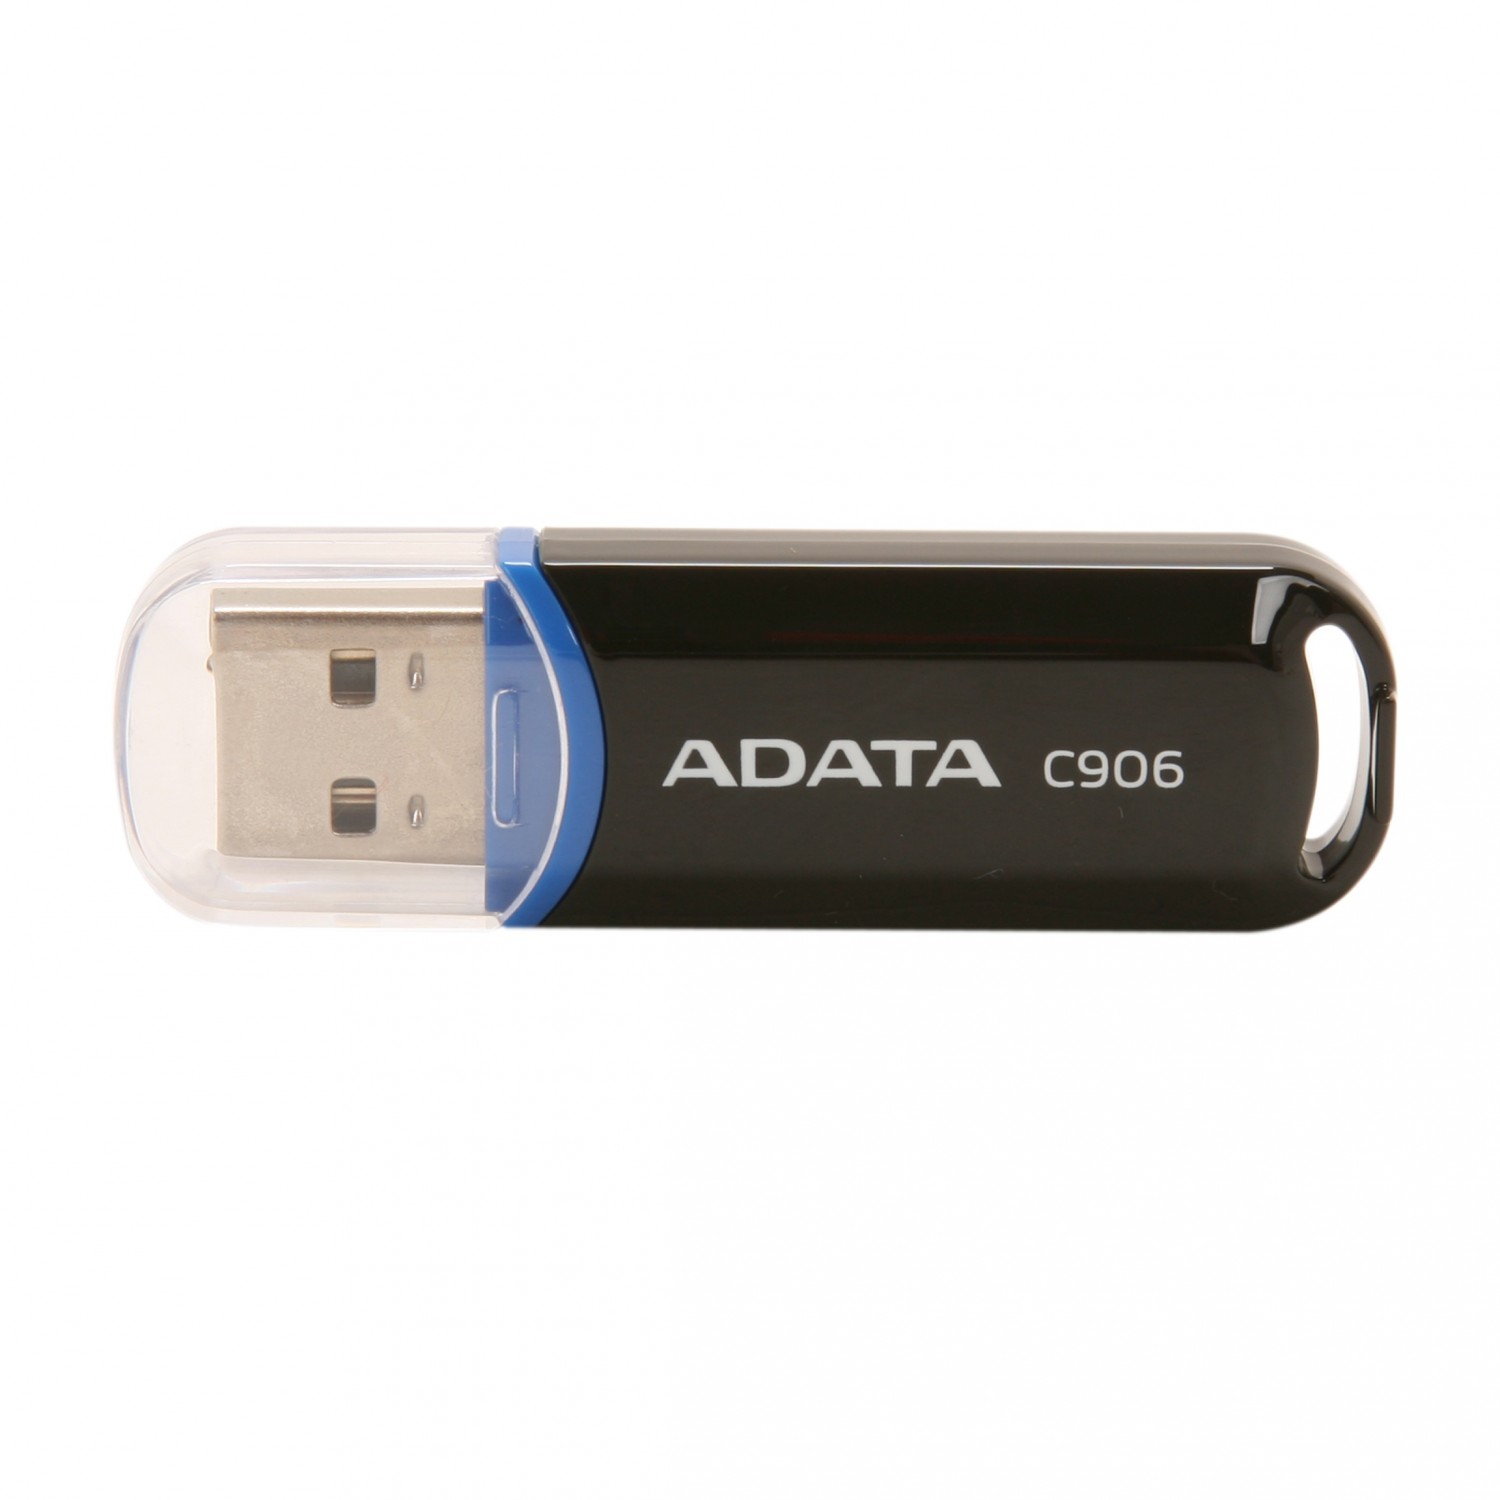 فلش مموری ADATA C906 - 16GB - Black/Blue